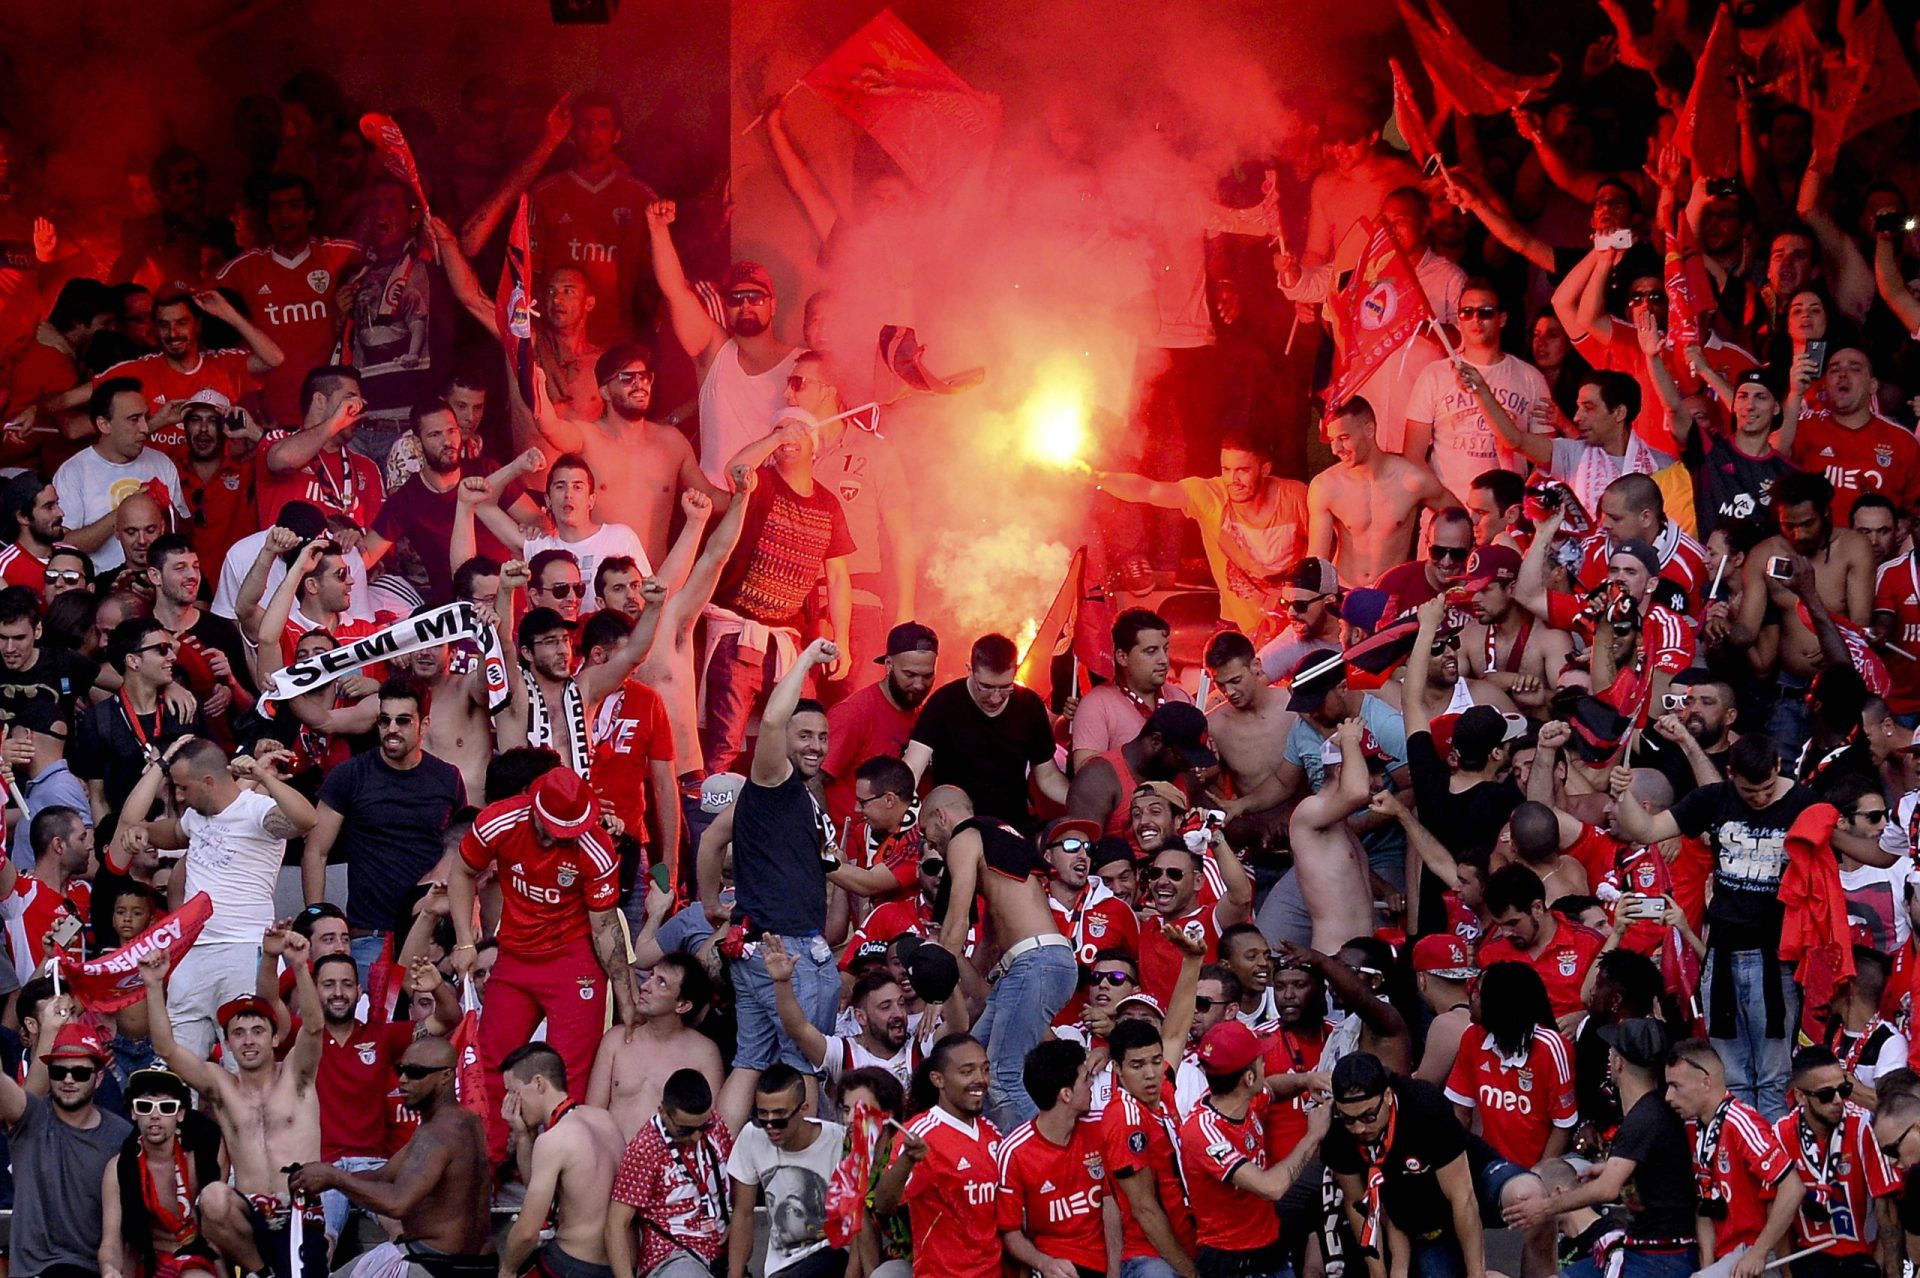 Vitória: Adeptos do Benfica causaram prejuízos superiores a 100 mil euros